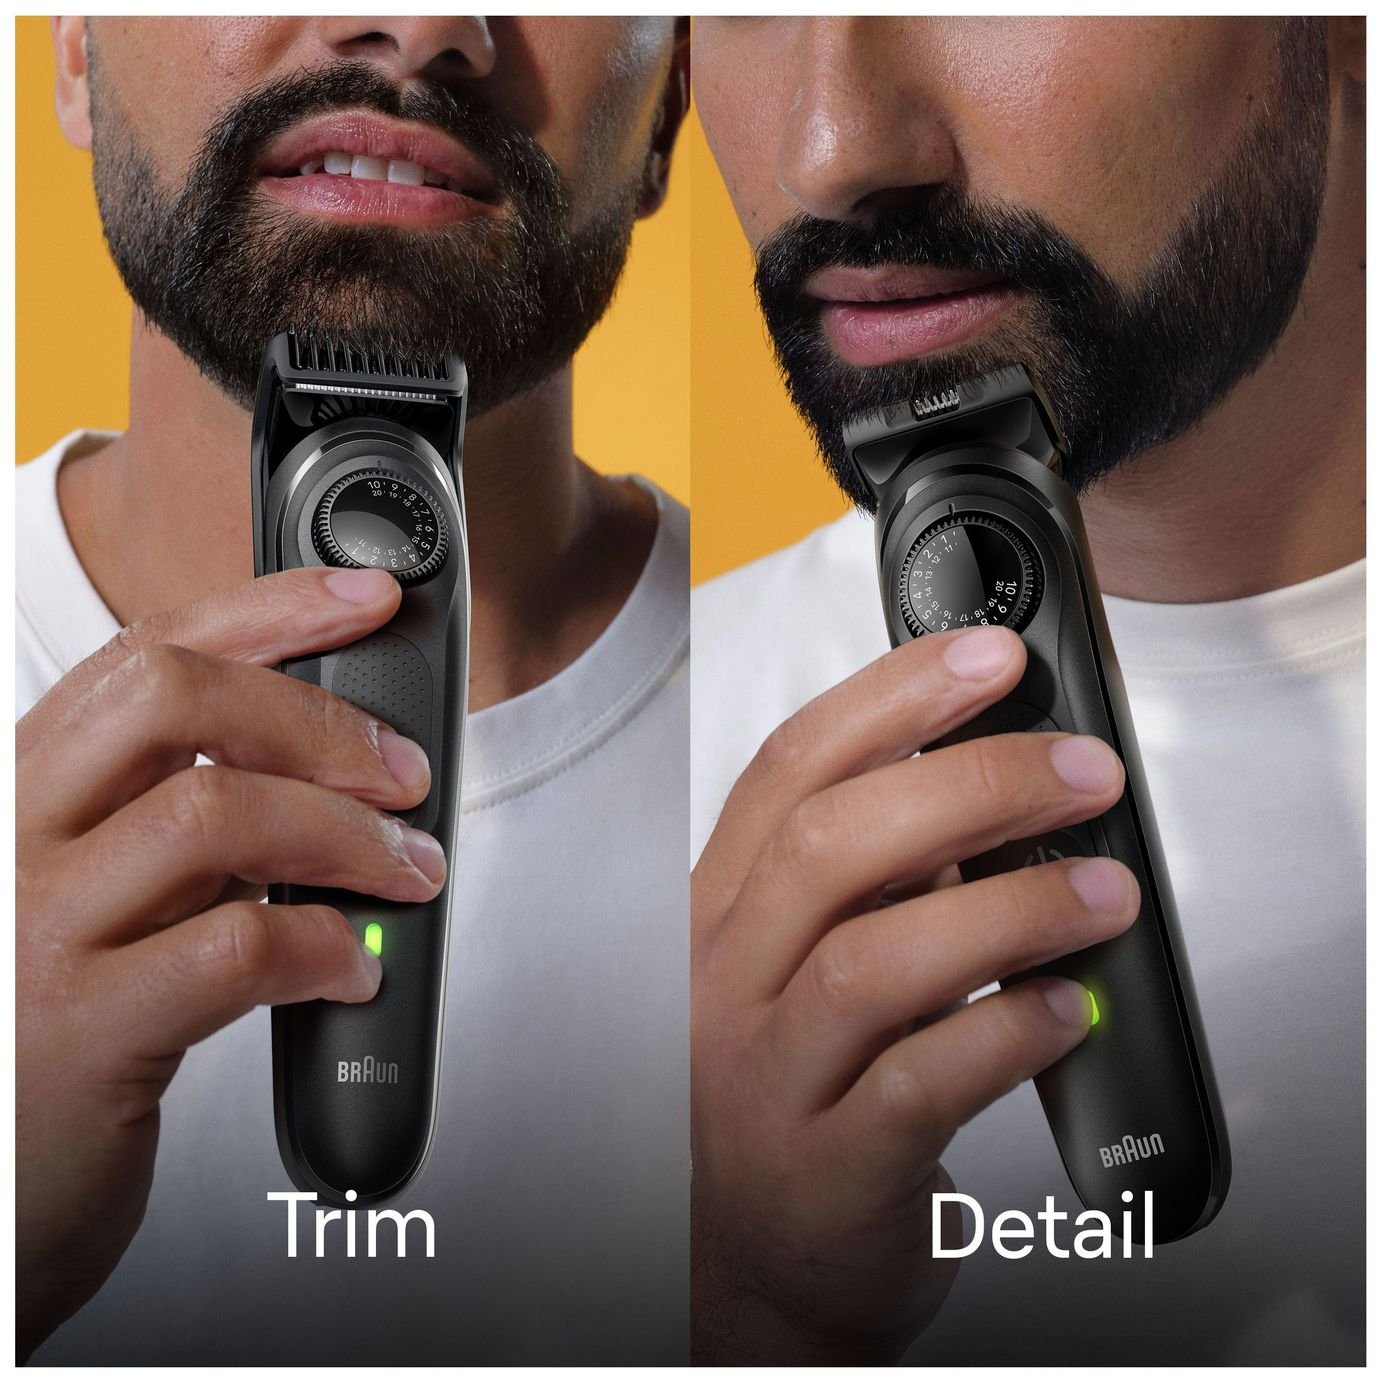 braun beard trimmer bt5060 review